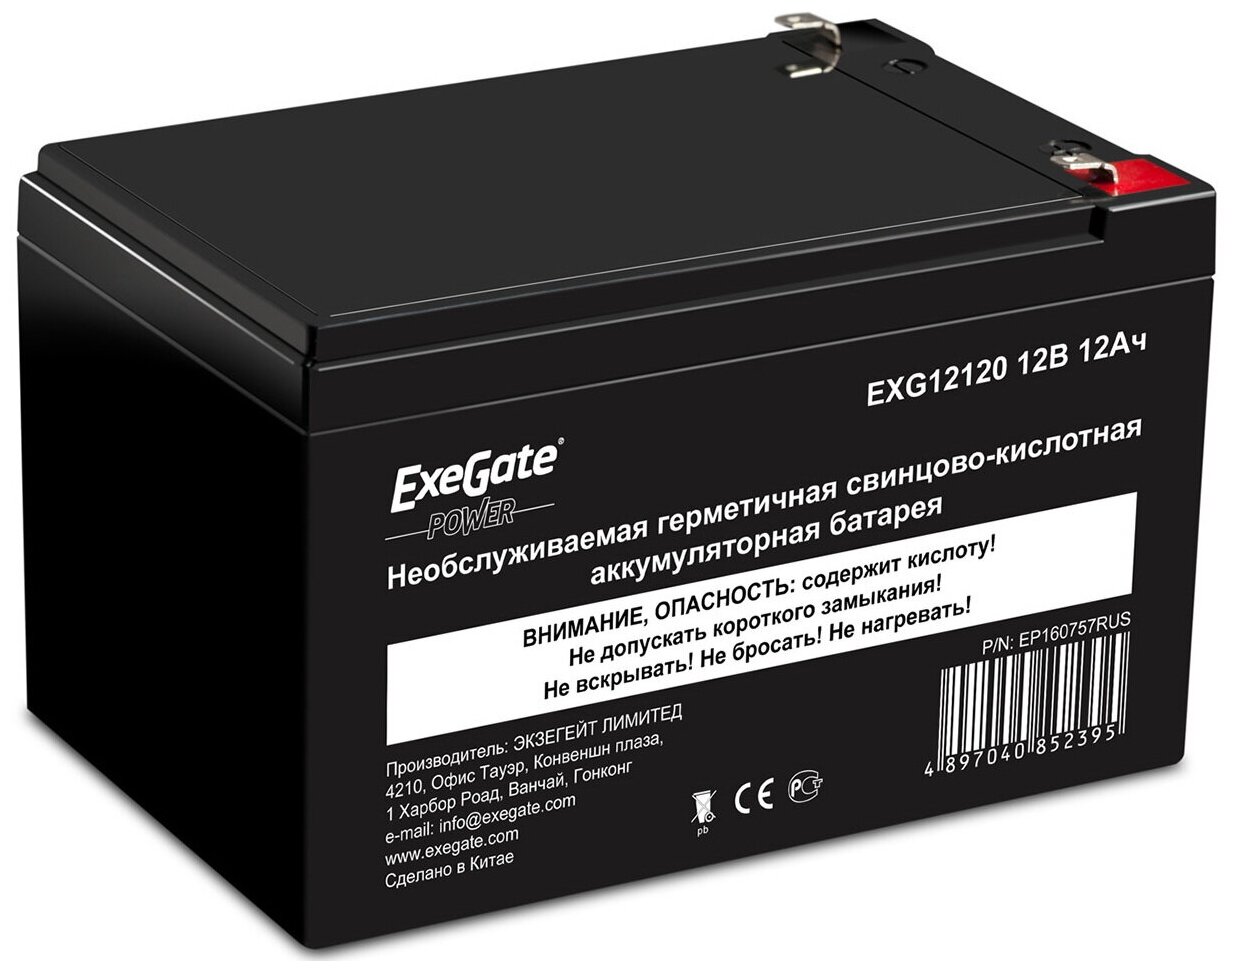 Батарея аккумуляторная Exegate EP160757RUS (12V 12Ah, клеммы F2) - фото №1